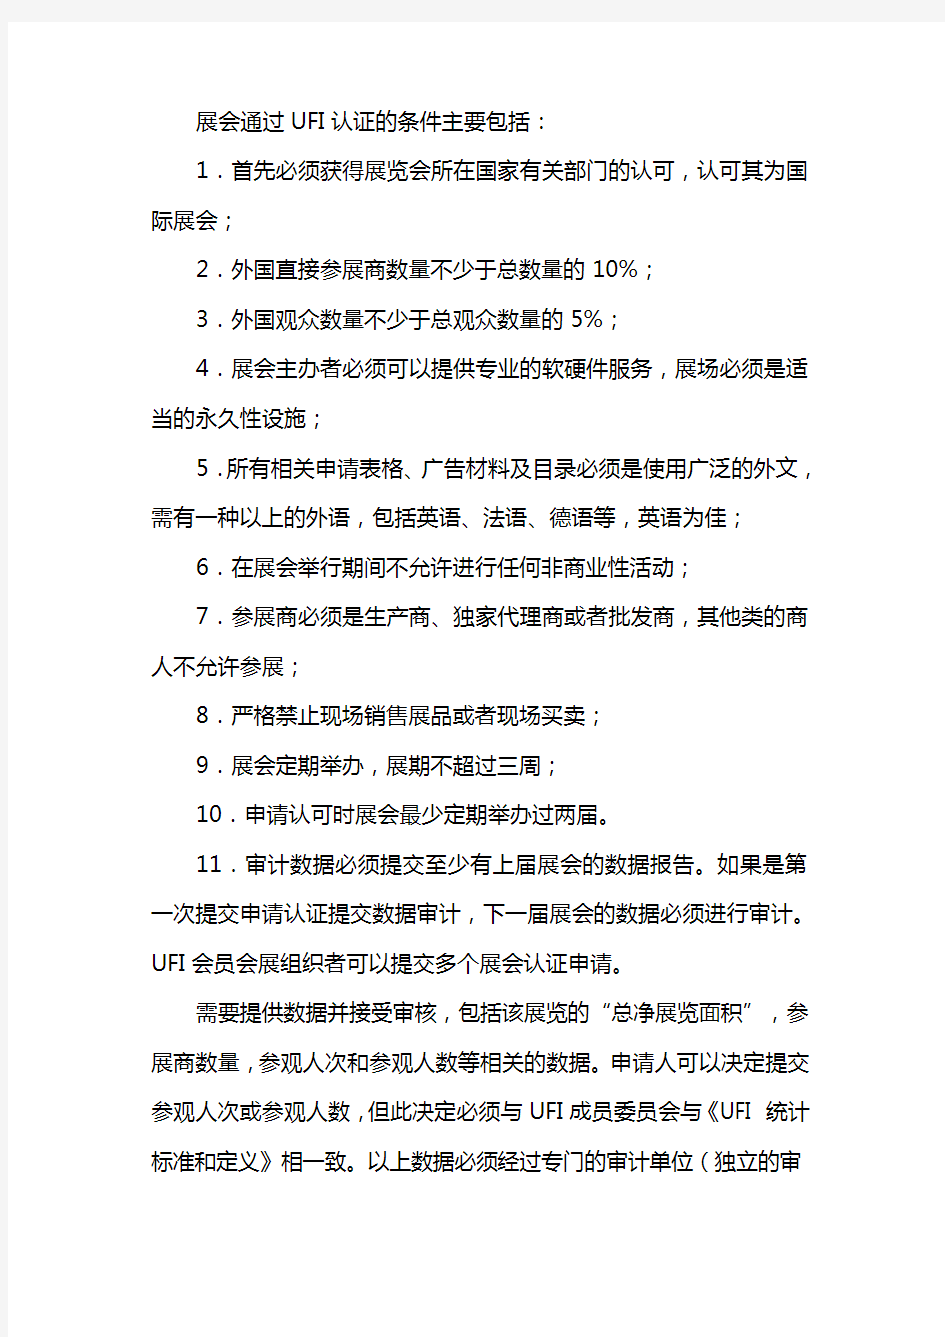 UFI认证标准及费用说明-中国国际贸易促进委员会北京市分会